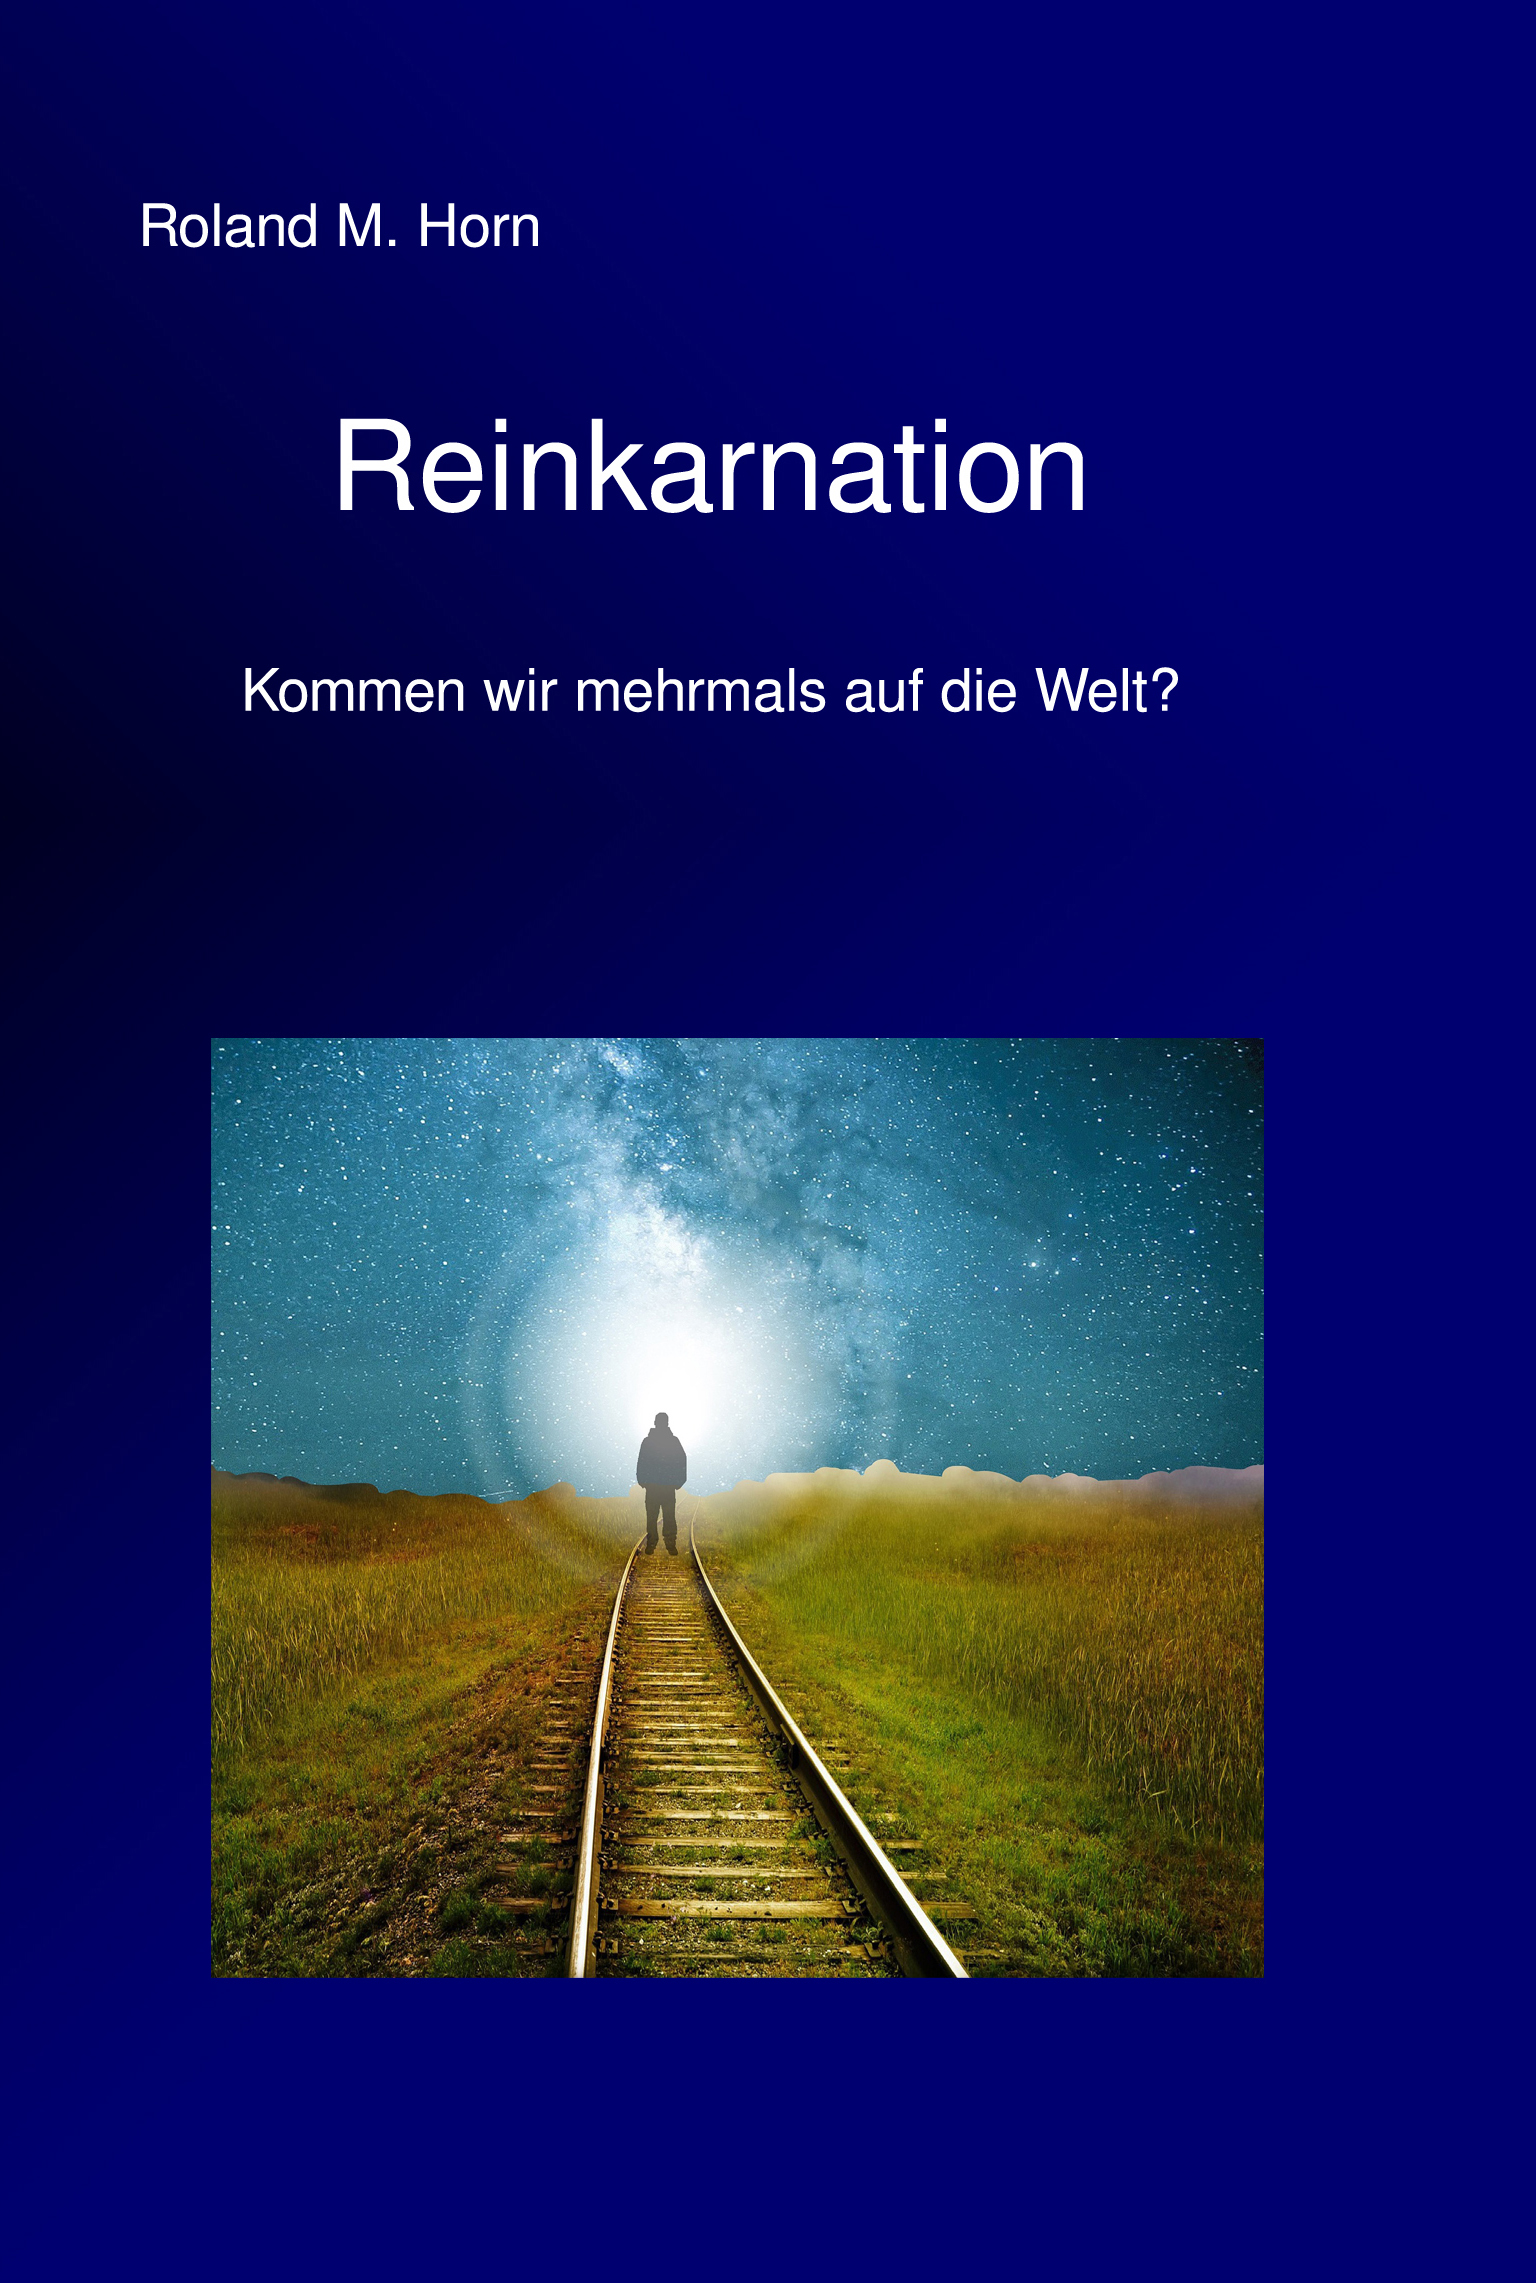 Roland M. Horn: Reinkarnation (Cover)